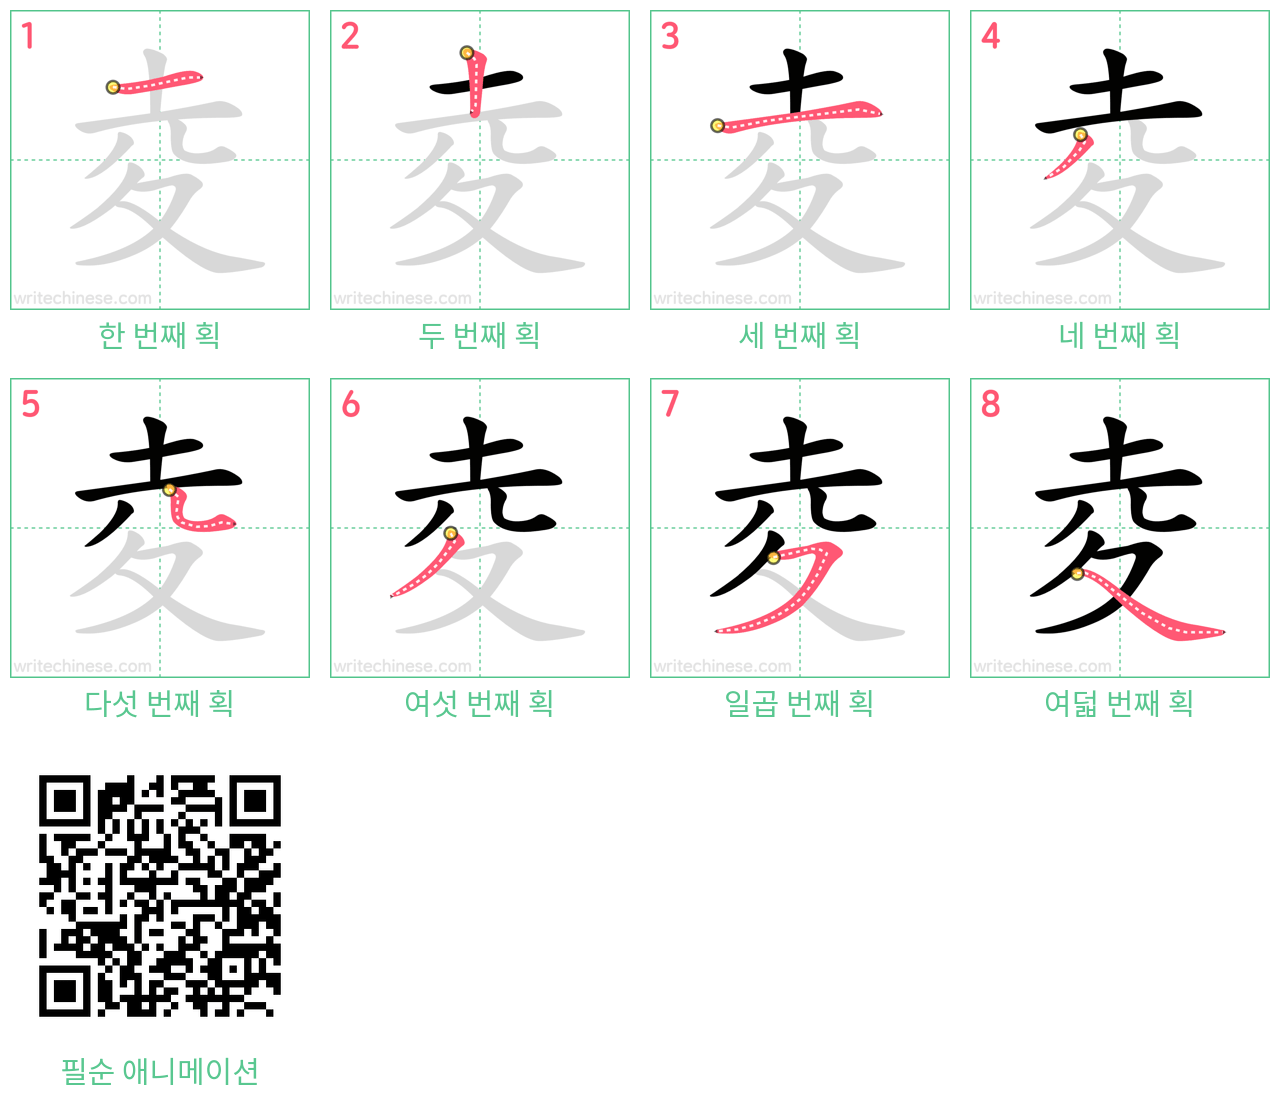 夌 step-by-step stroke order diagrams